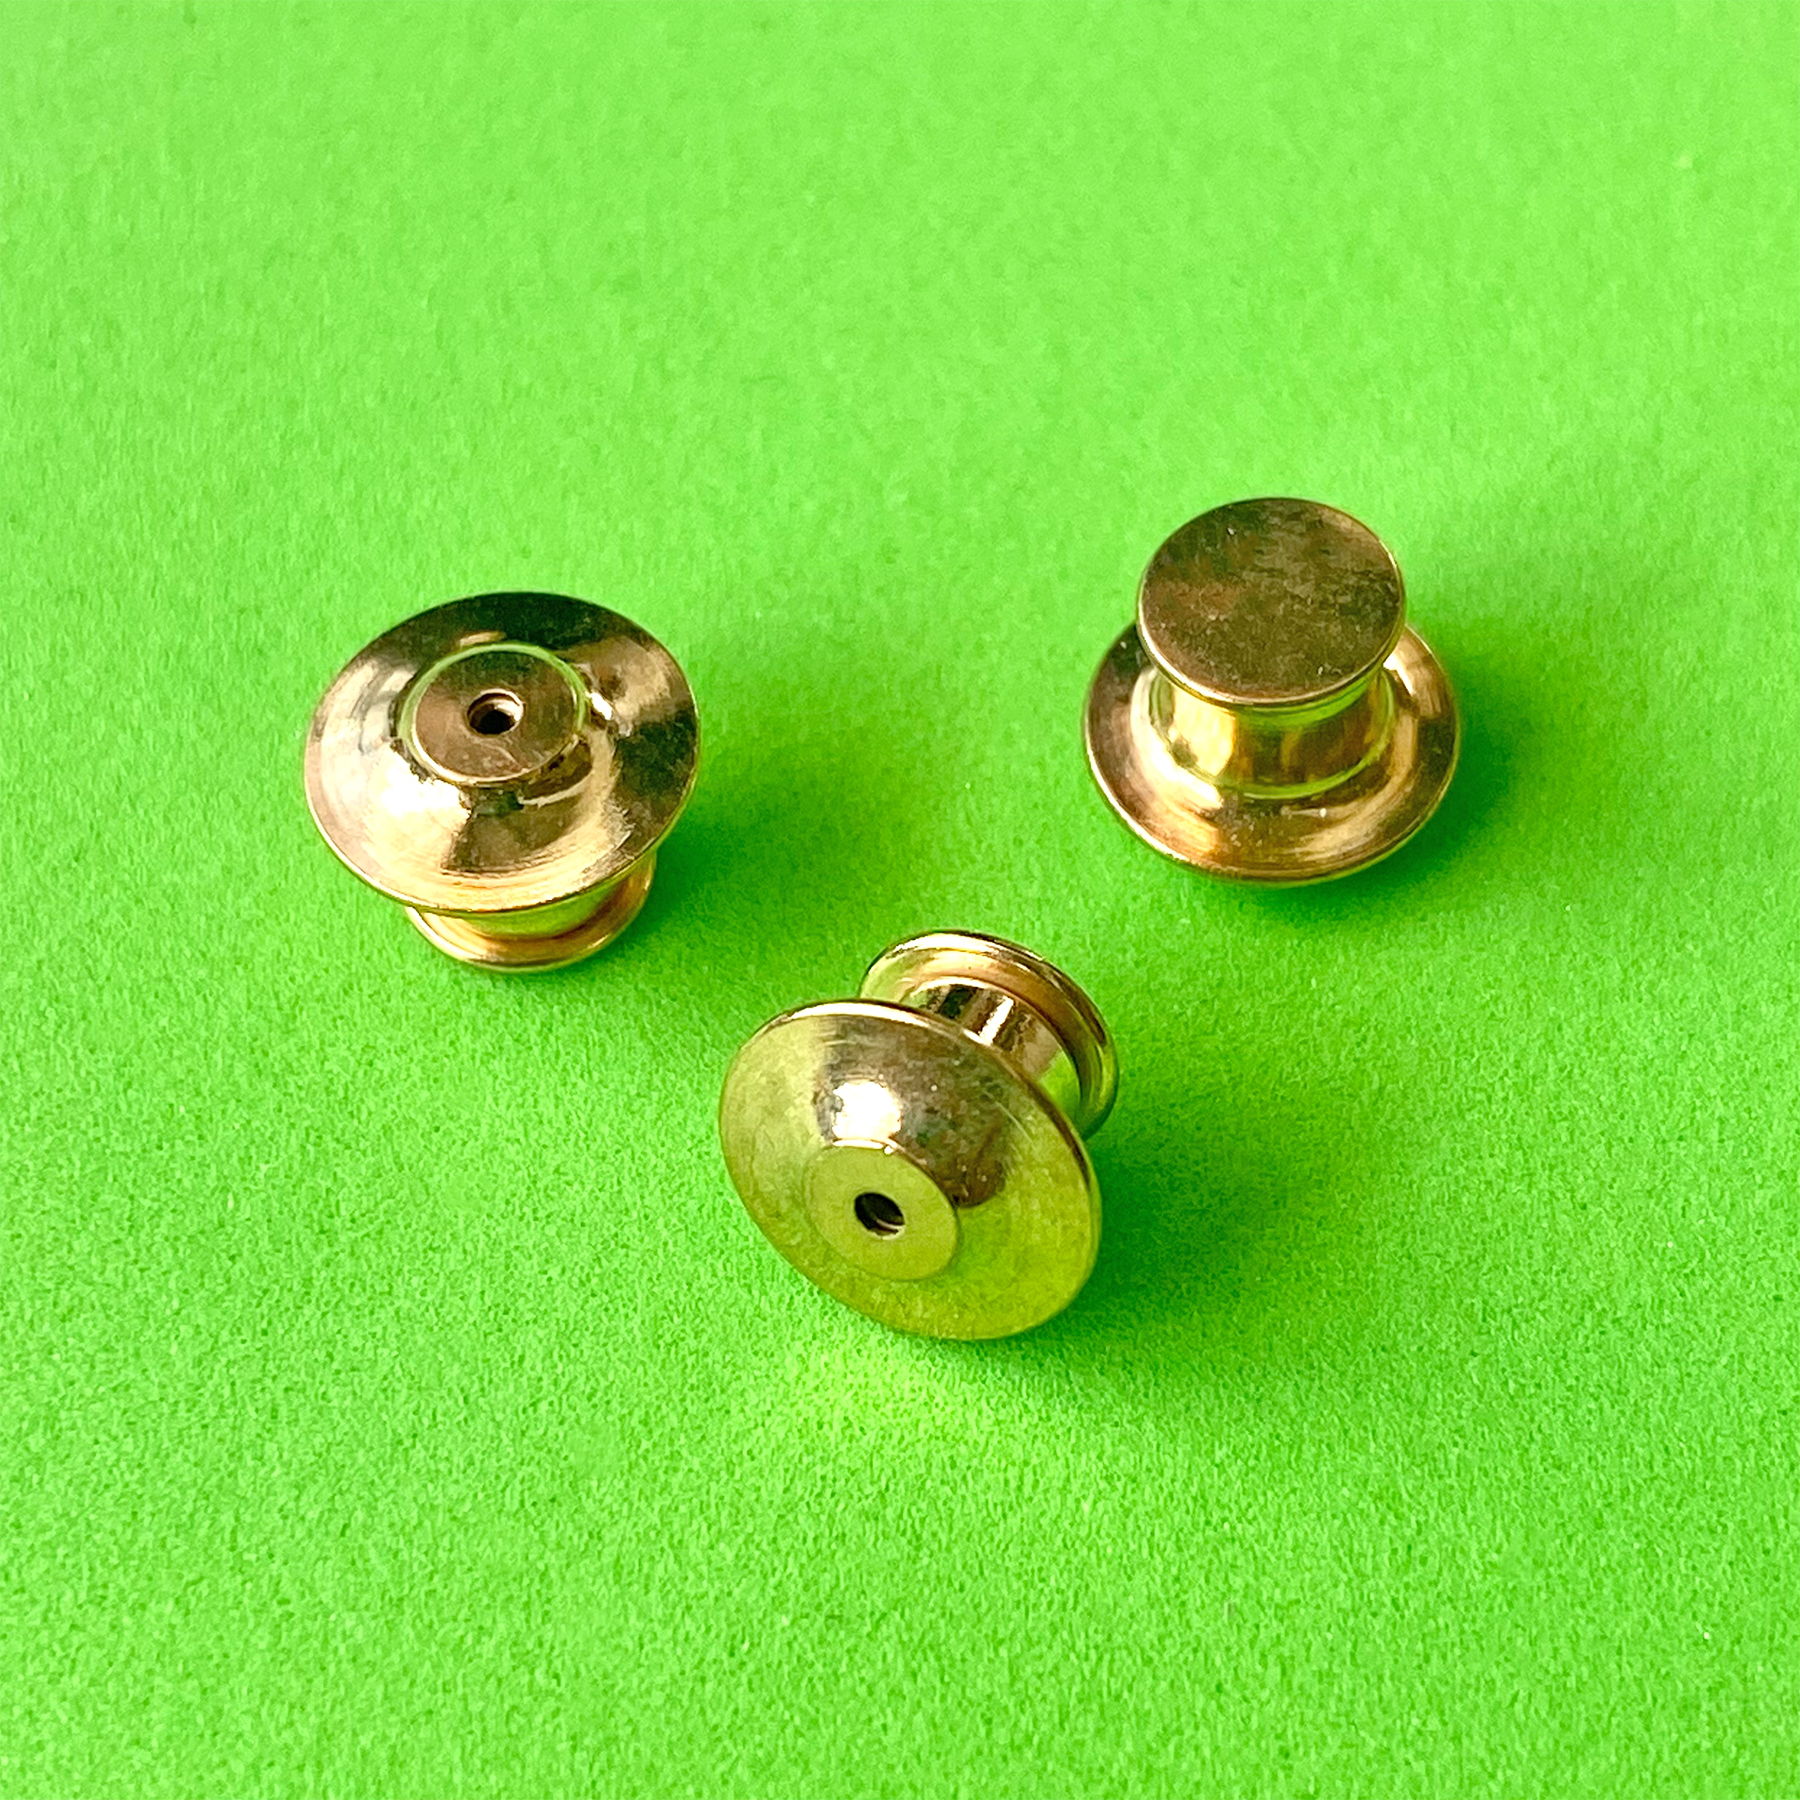 50 PCS Pin Keepers/Locking Pin Backs/Pin Locks-Never Lose a Pin Again!